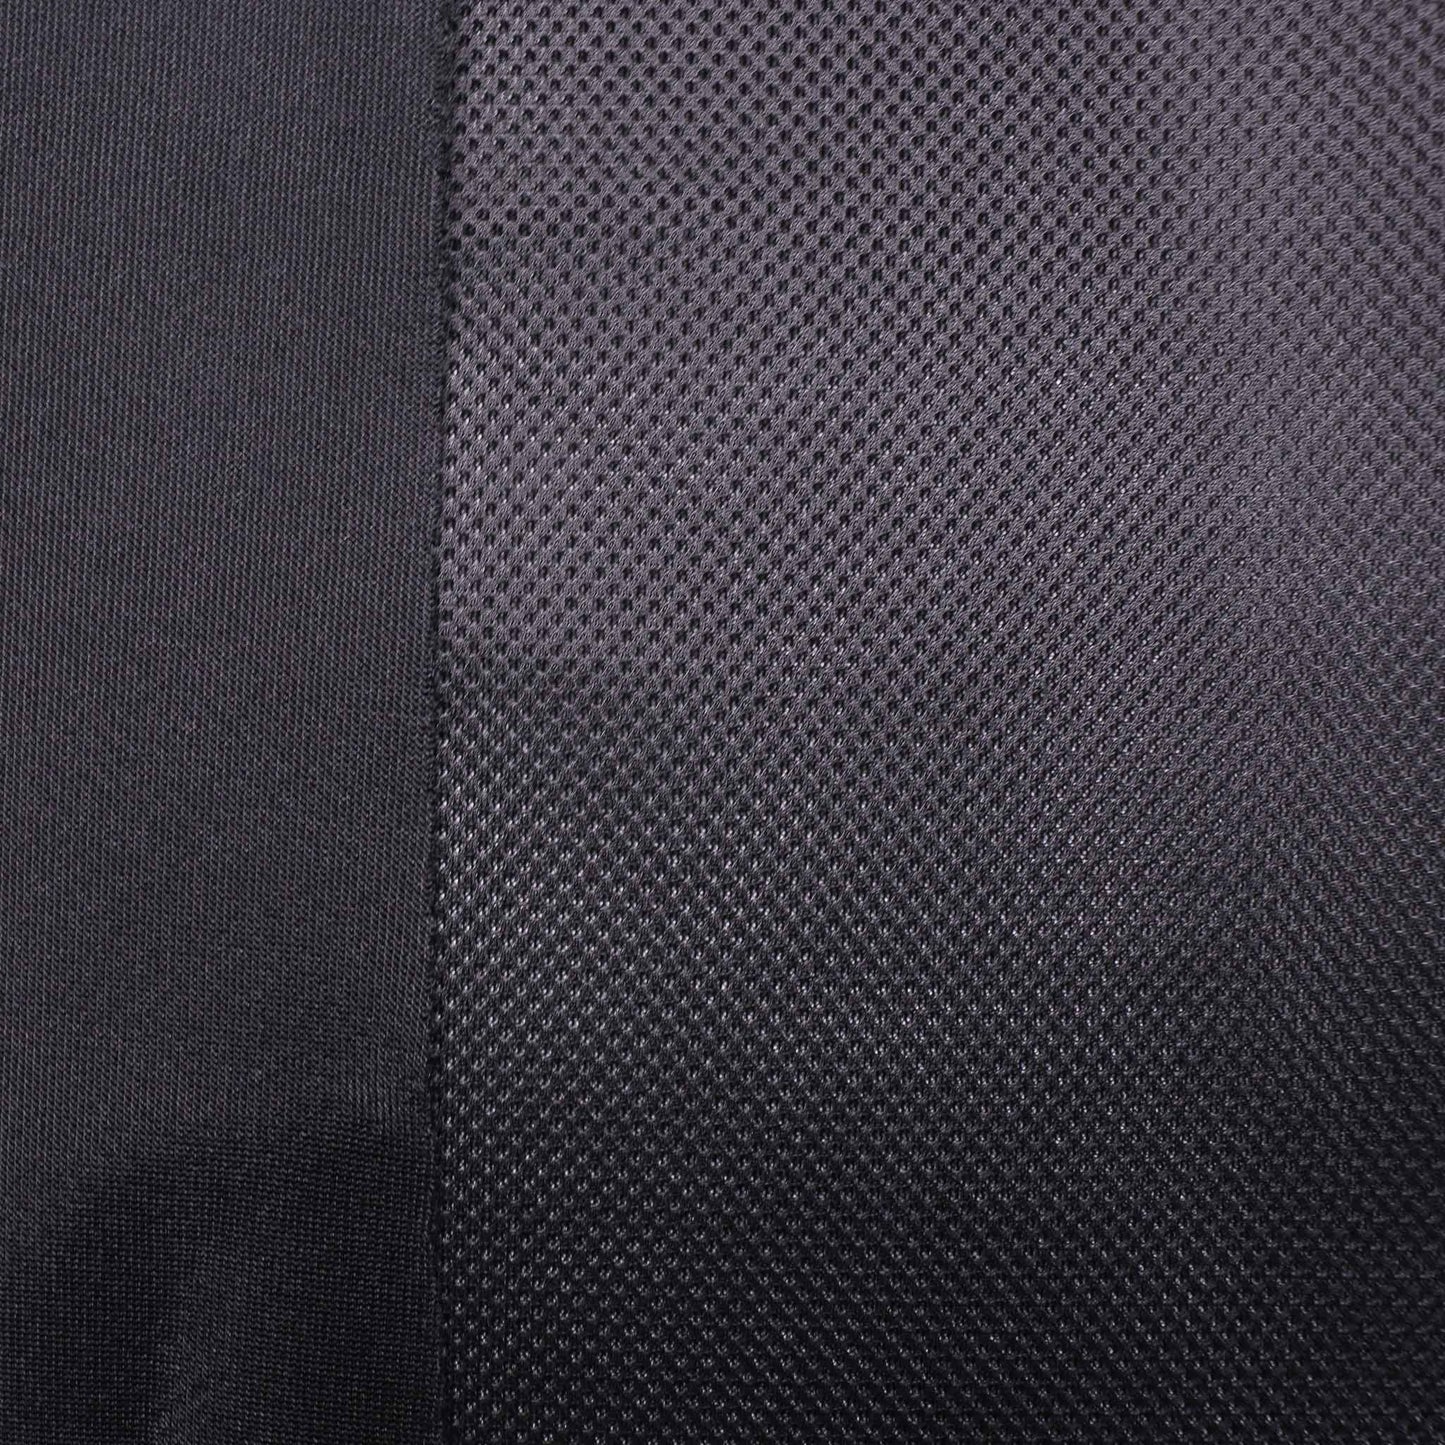 3D mesh spacer airtex sports dress fabric in black